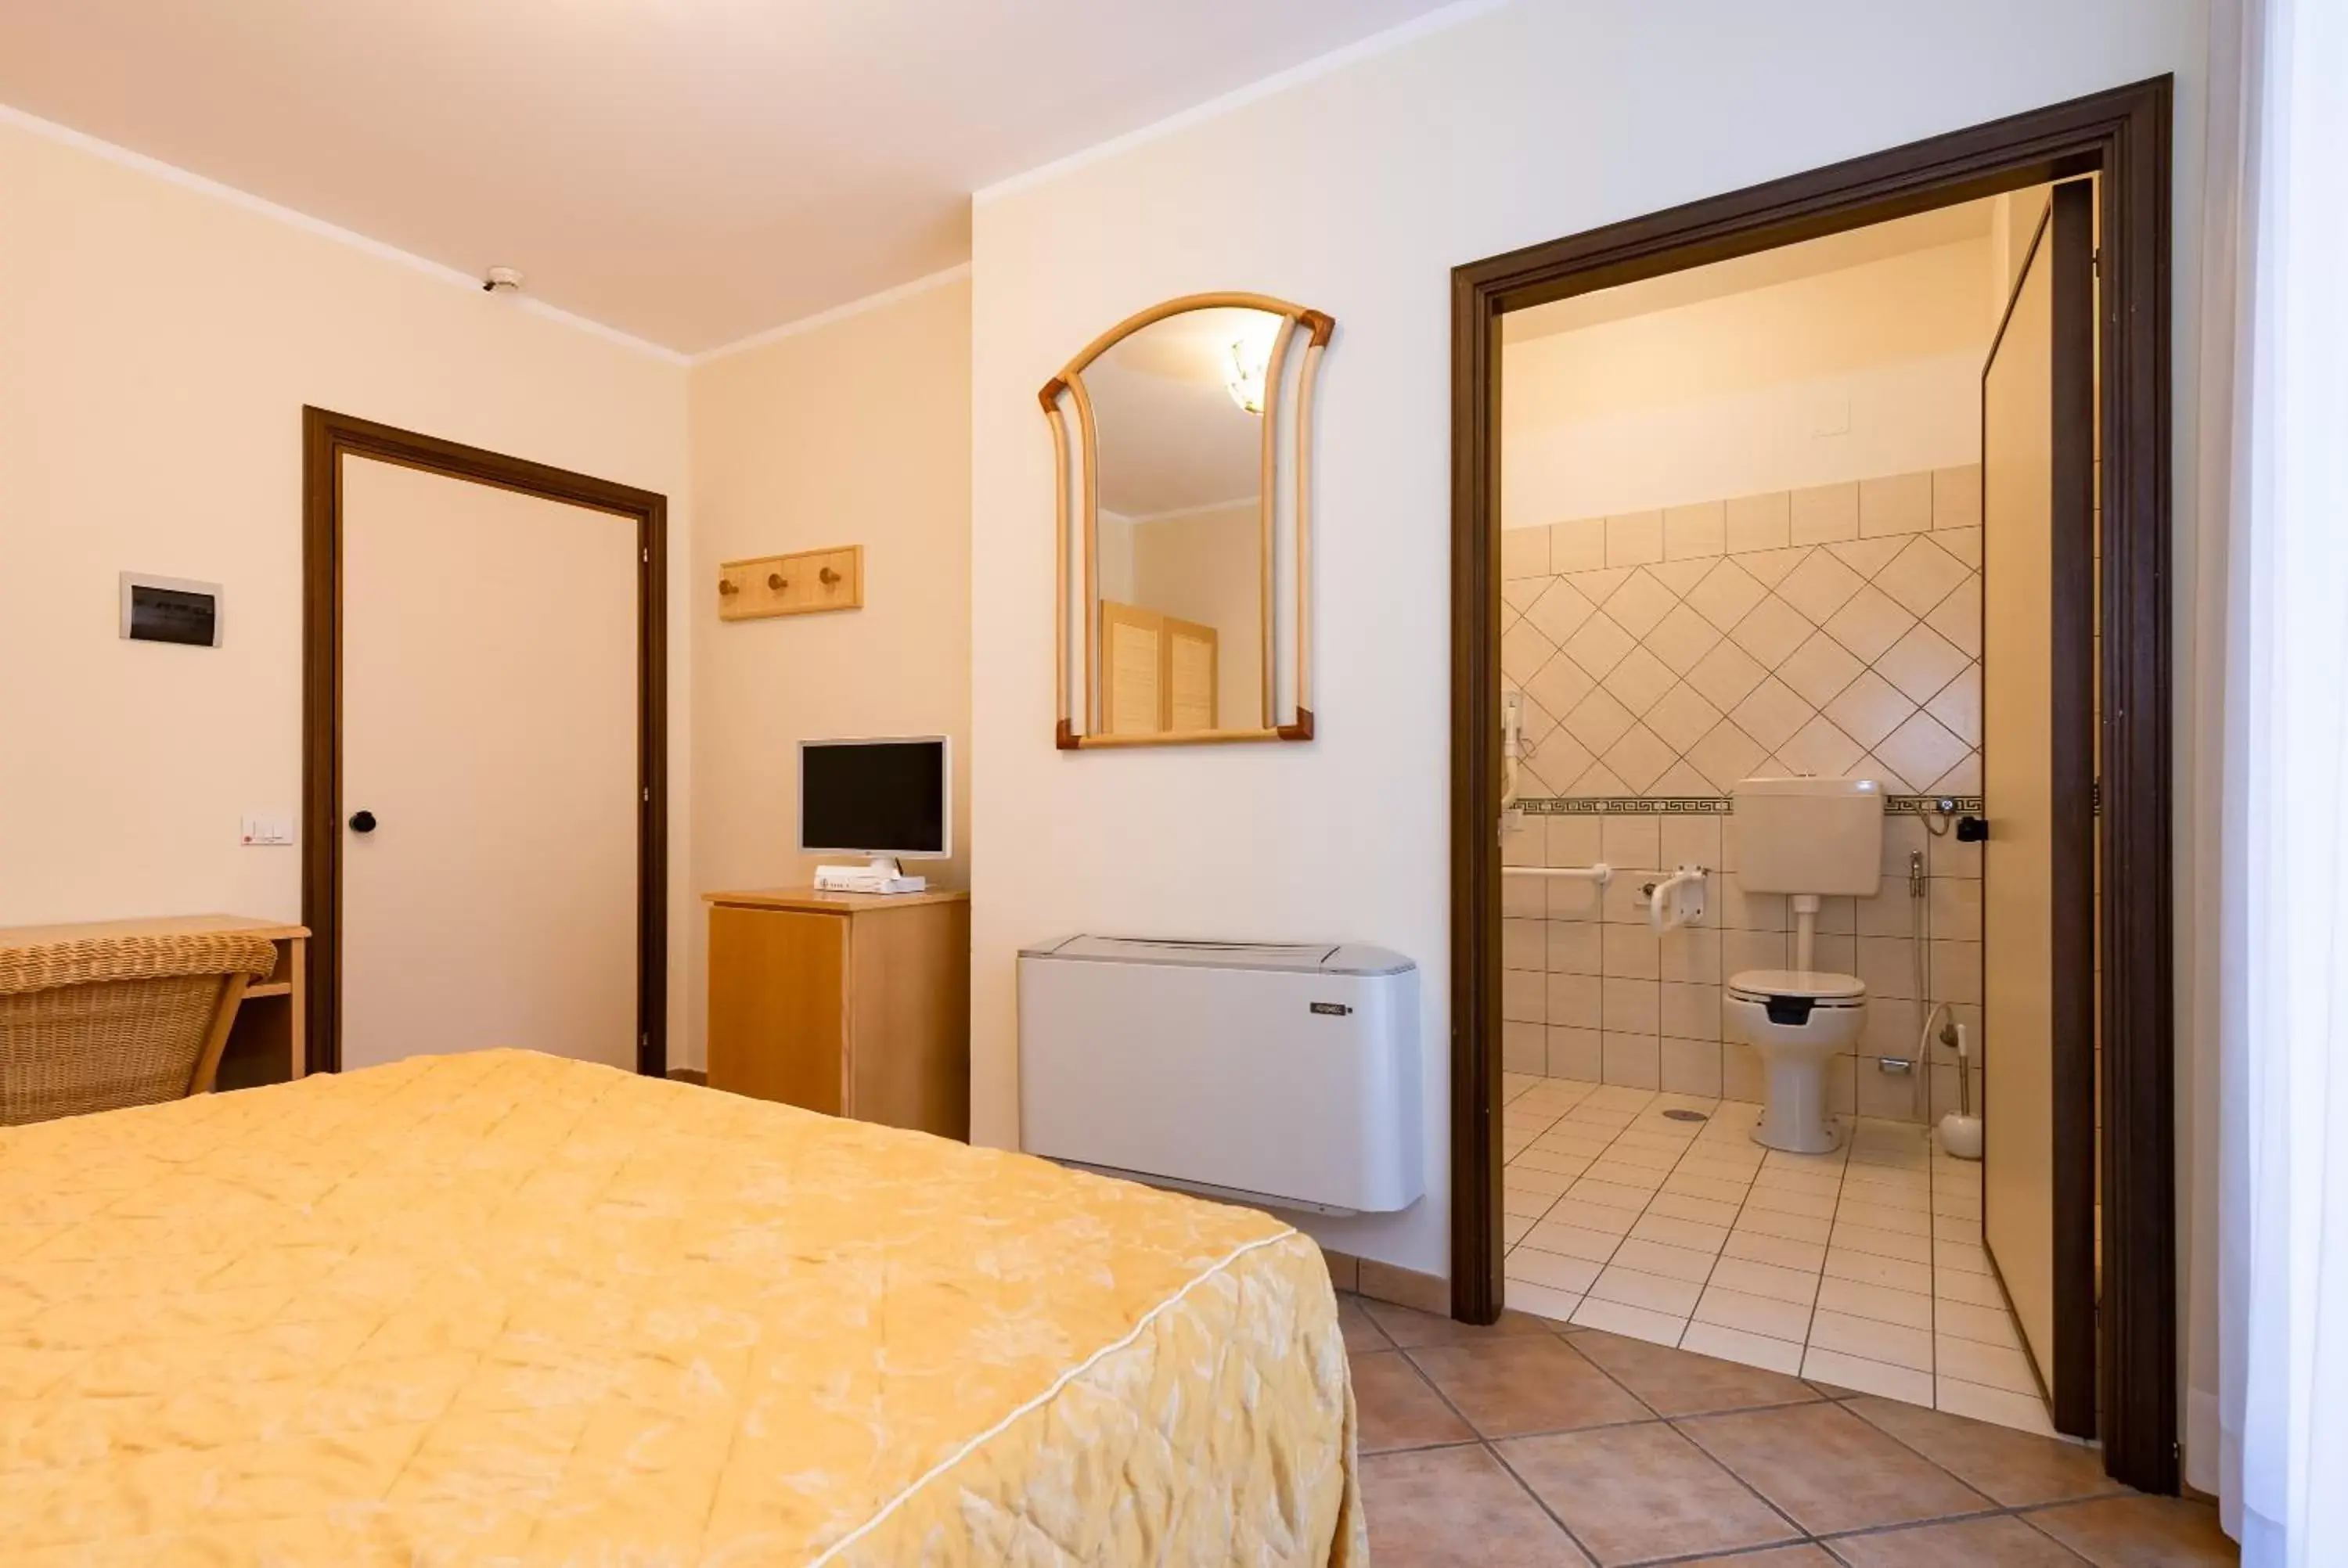 Bathroom in Hotel Il Ceppo